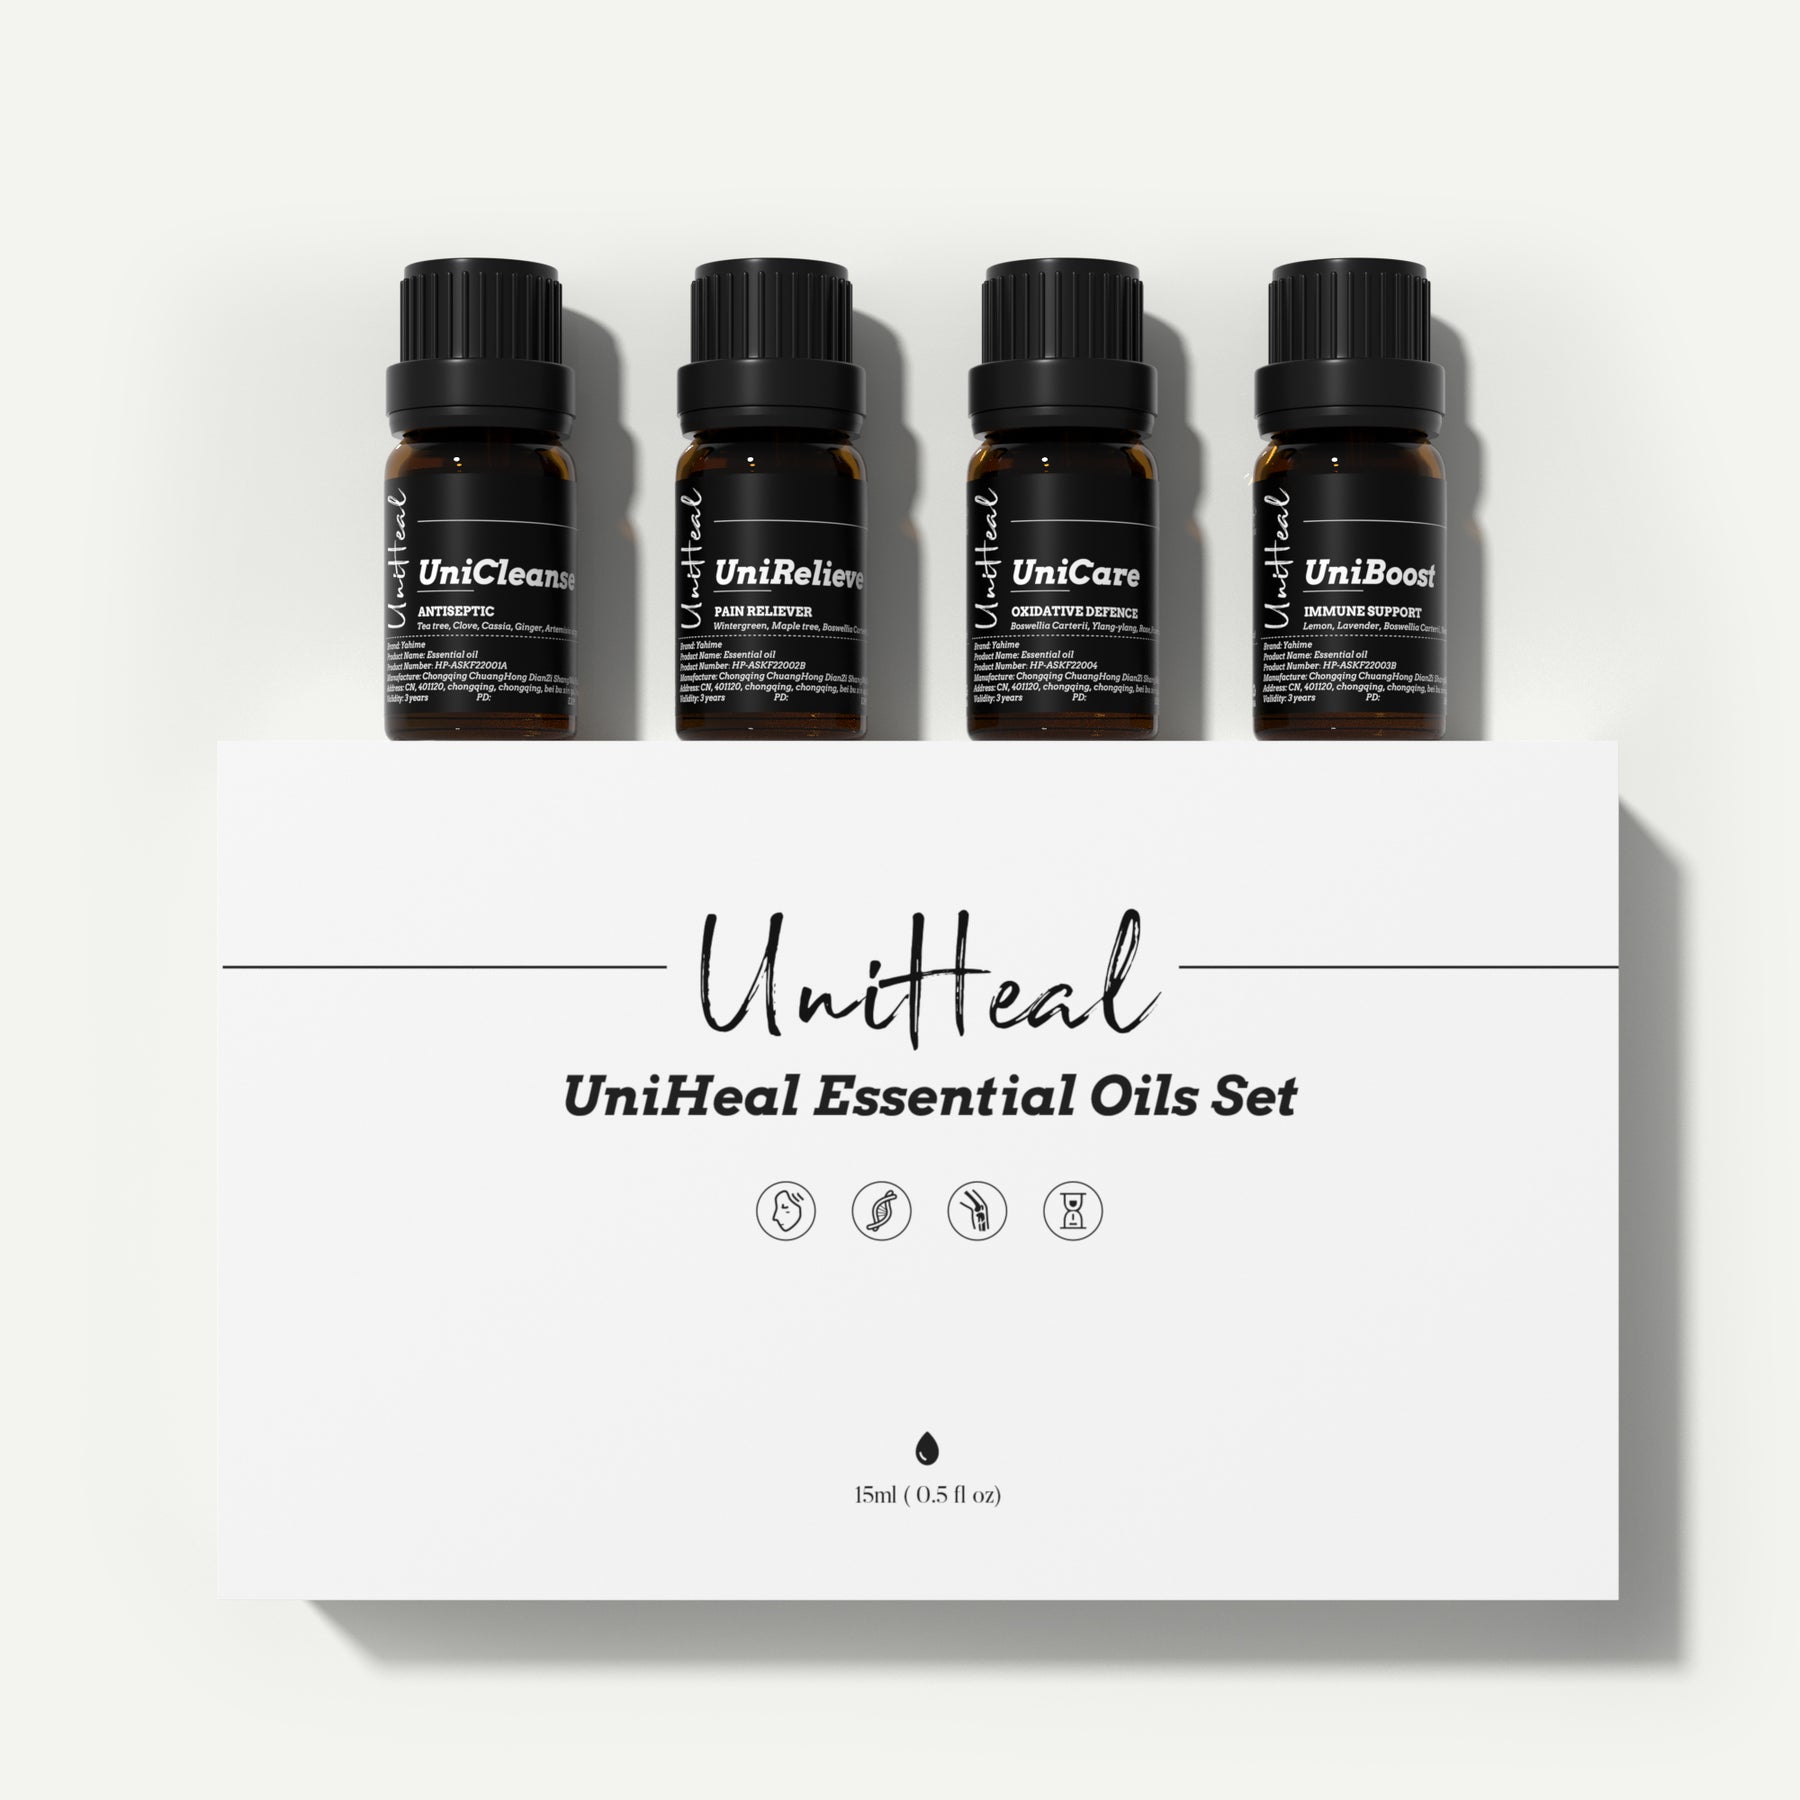 UniHeal® Essential Oils Set